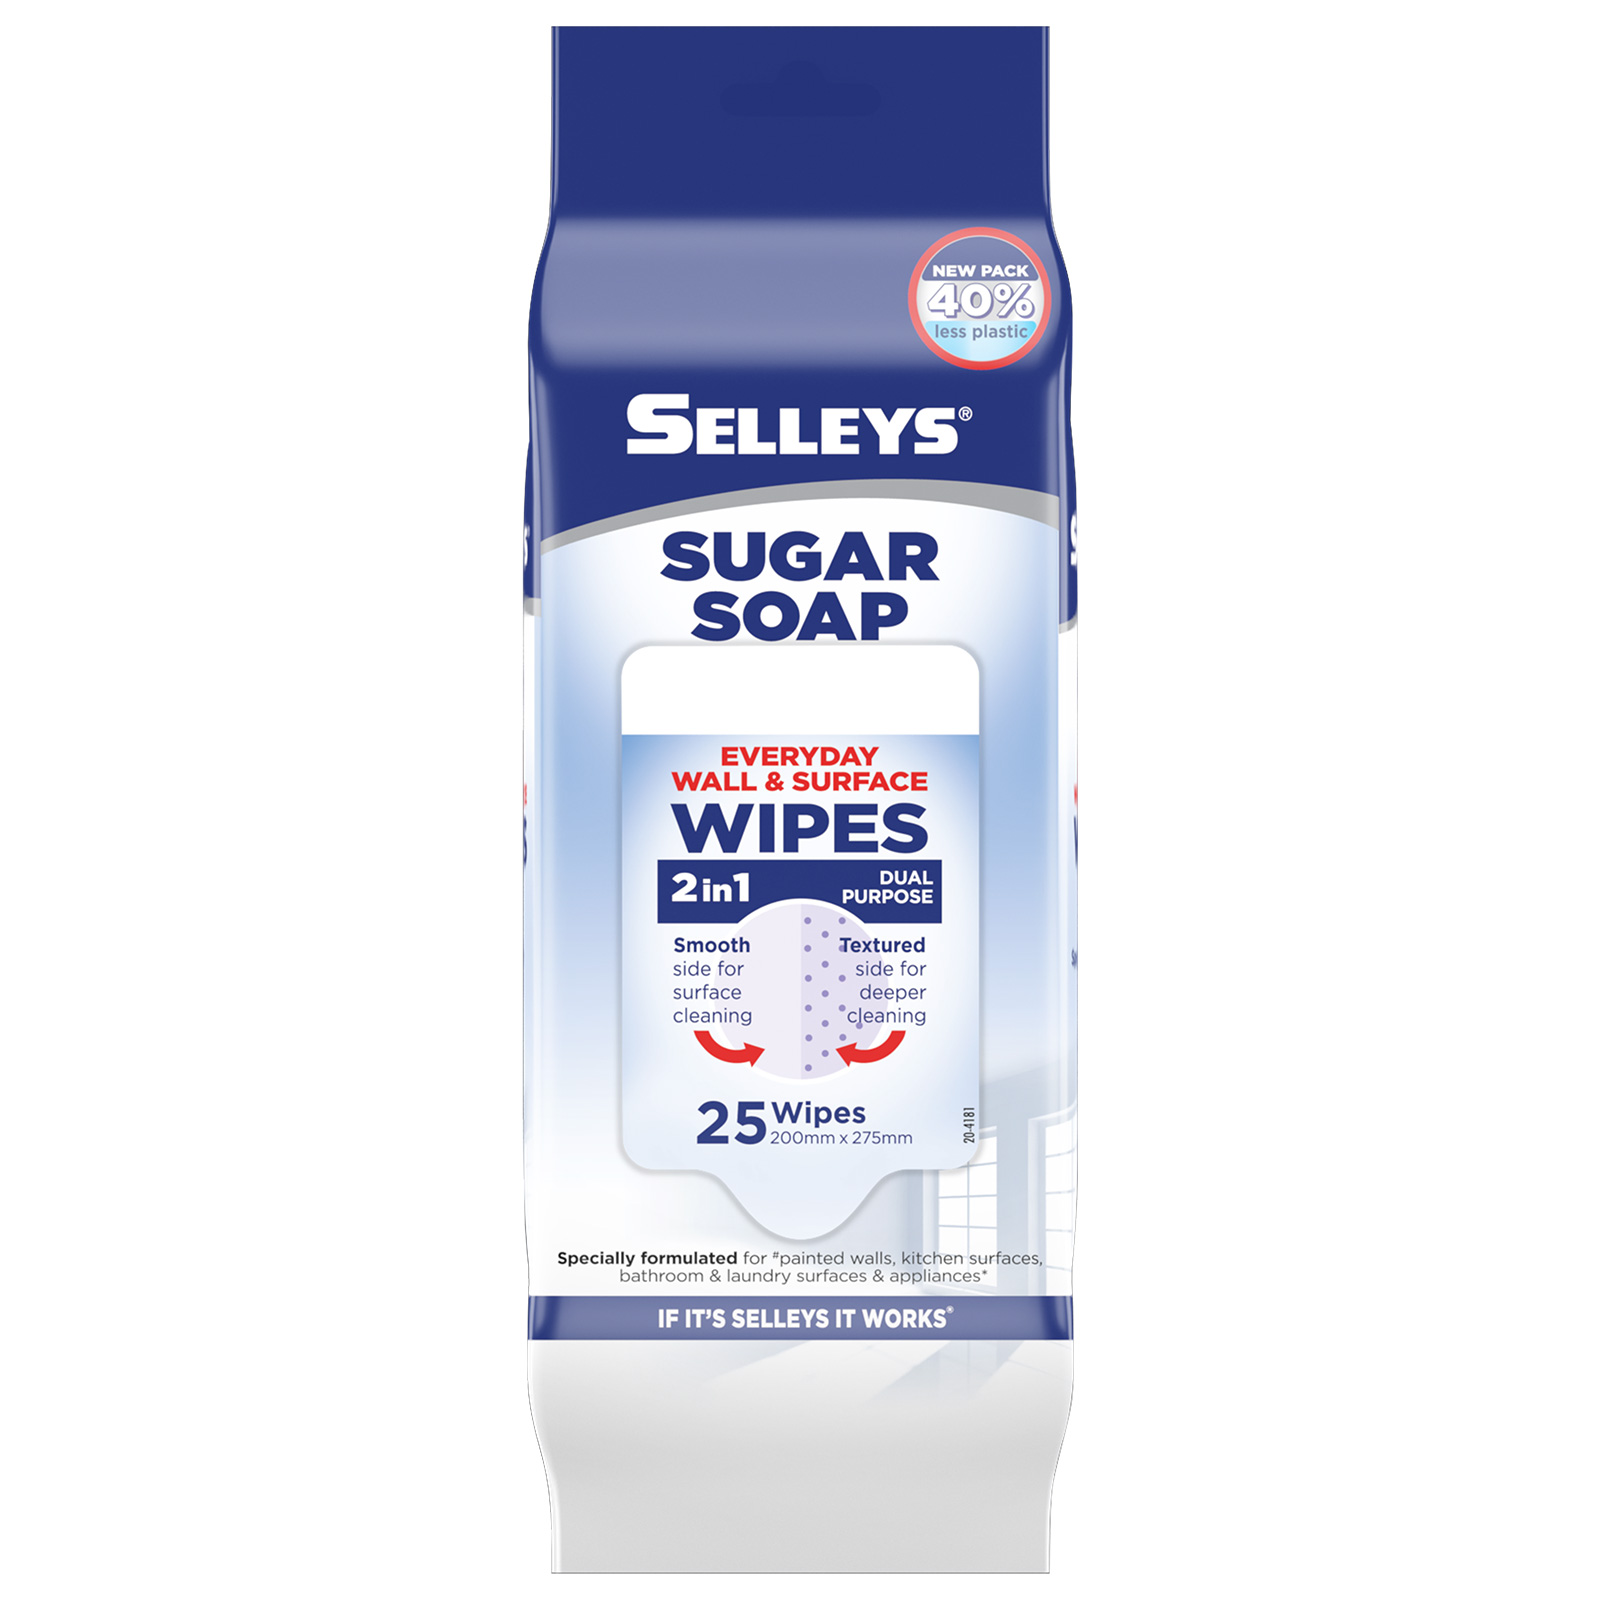 https://selleys.co.nz/media/irlcdsvl/selleys-sugar-soap-wipes.jpg